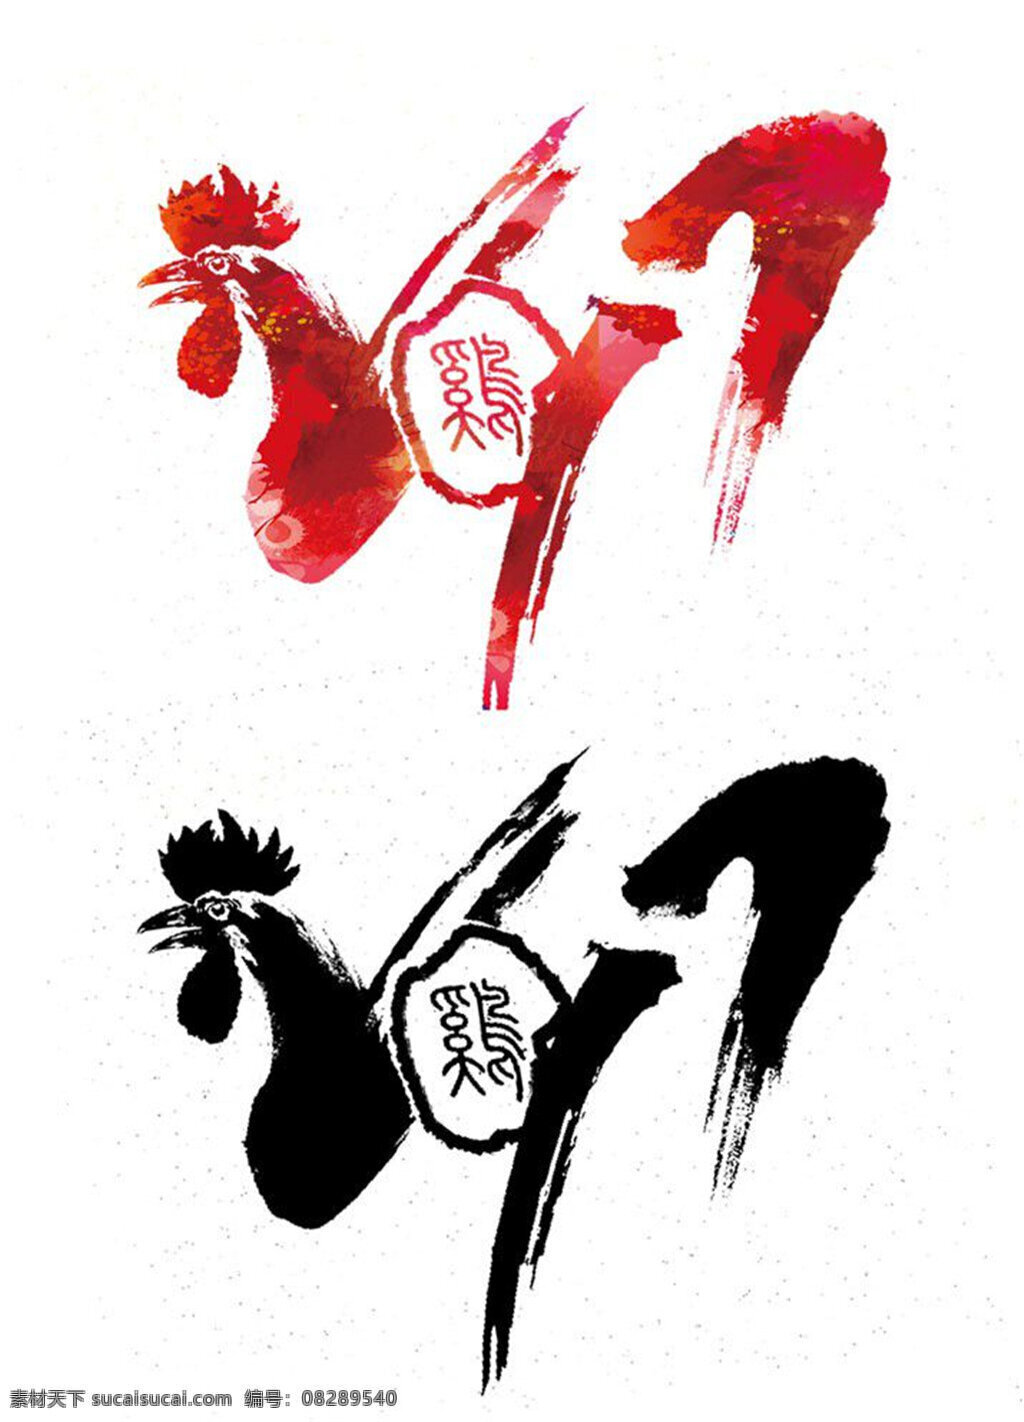 2017 新年 艺术 字体 2017鸡年 公鸡 水墨公鸡字体 艺术字体设计